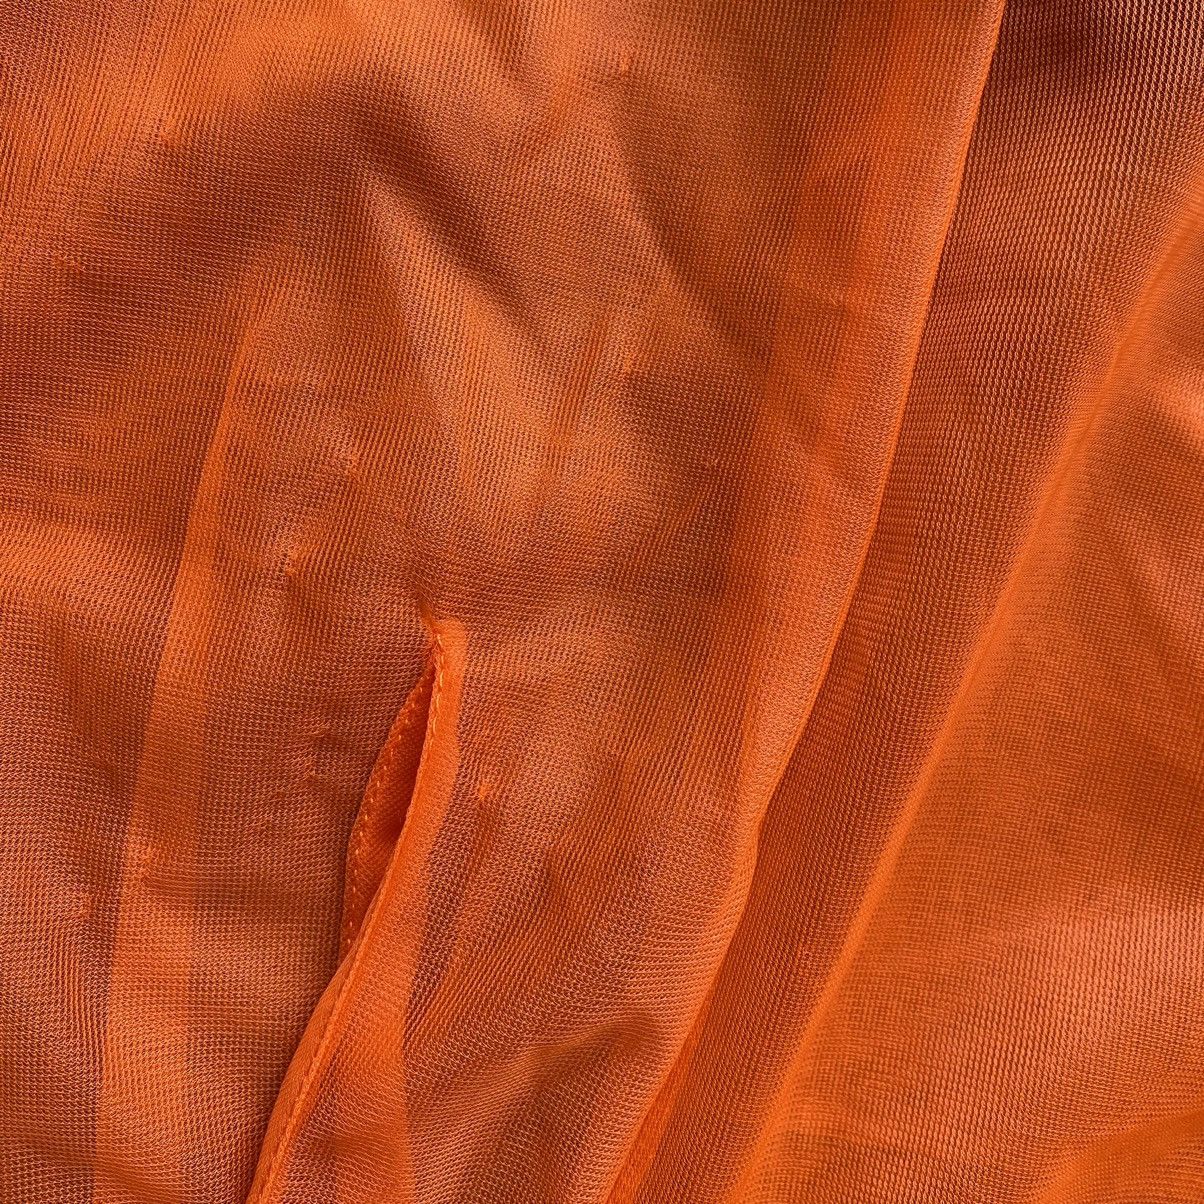 Jean Paul Gaultier Vintage JPG Orange Mesh Shirt With Native Details Size US S / EU 44-46 / 1 - 6 Thumbnail